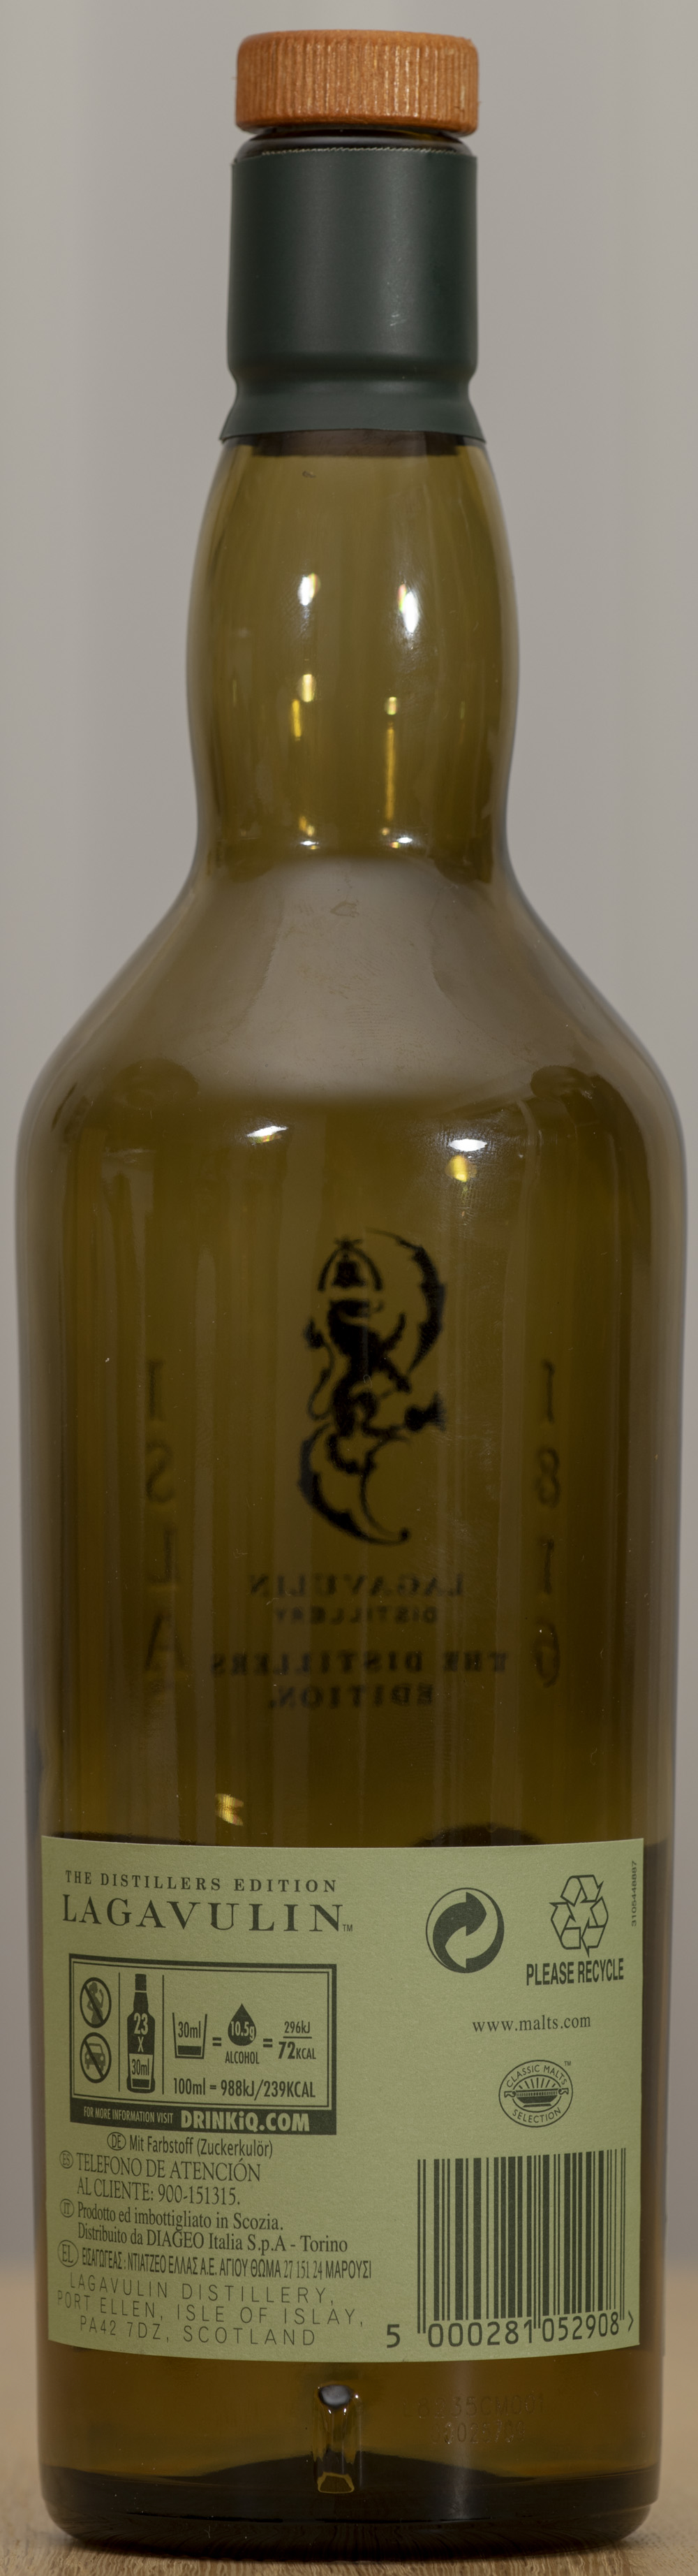 Billede: PHC_1587 - Lagavulin Distillers Edition - bottle back.jpg